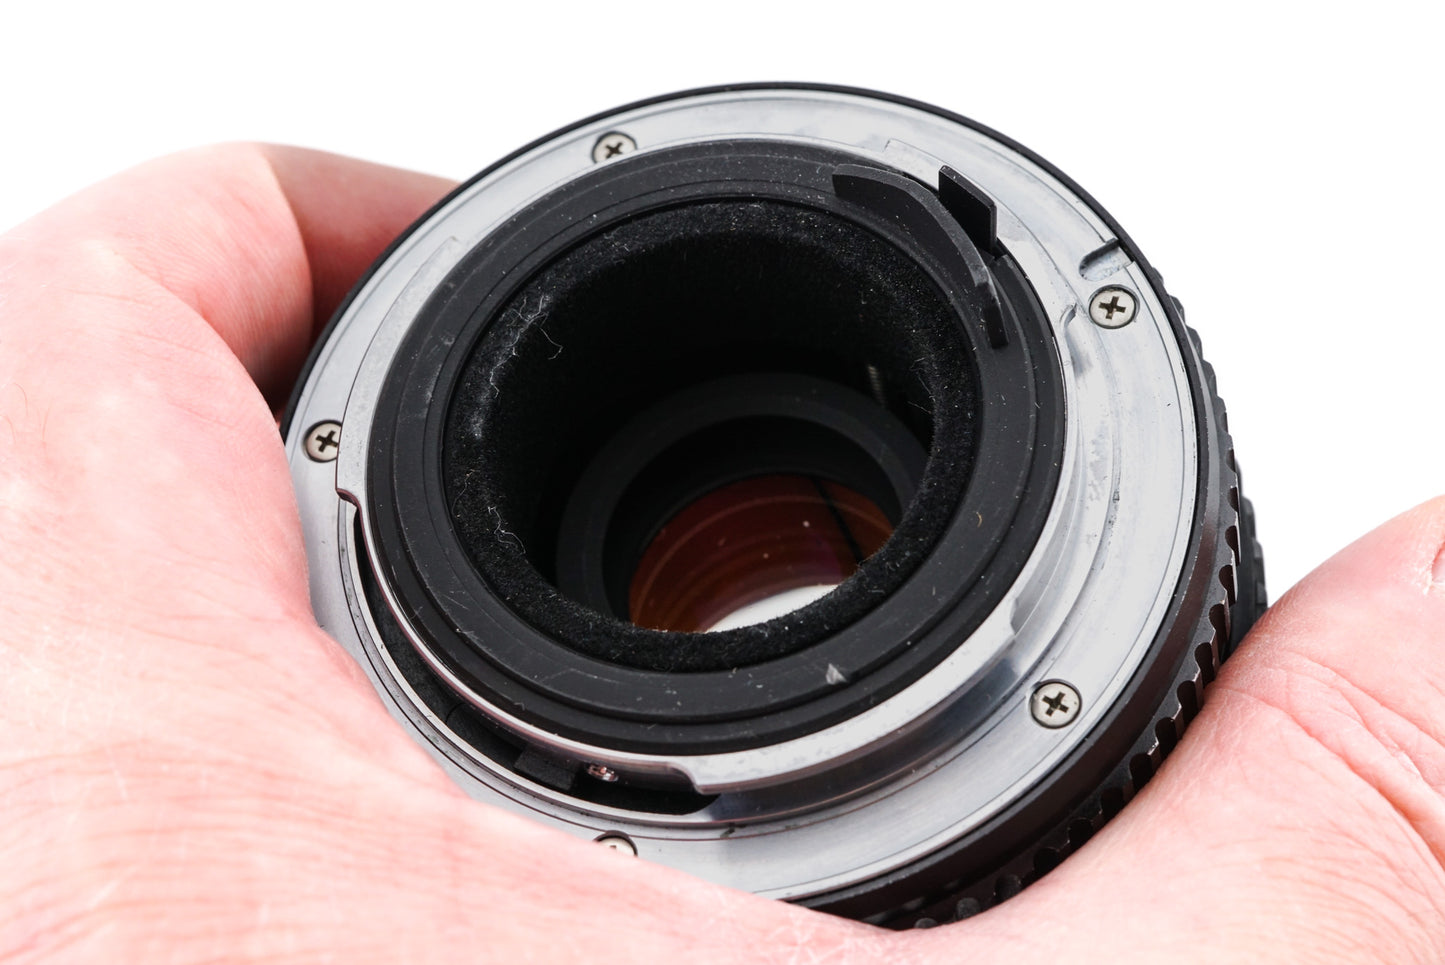 Pentax 40-80mm f2.8-4 SMC Pentax-M Zoom